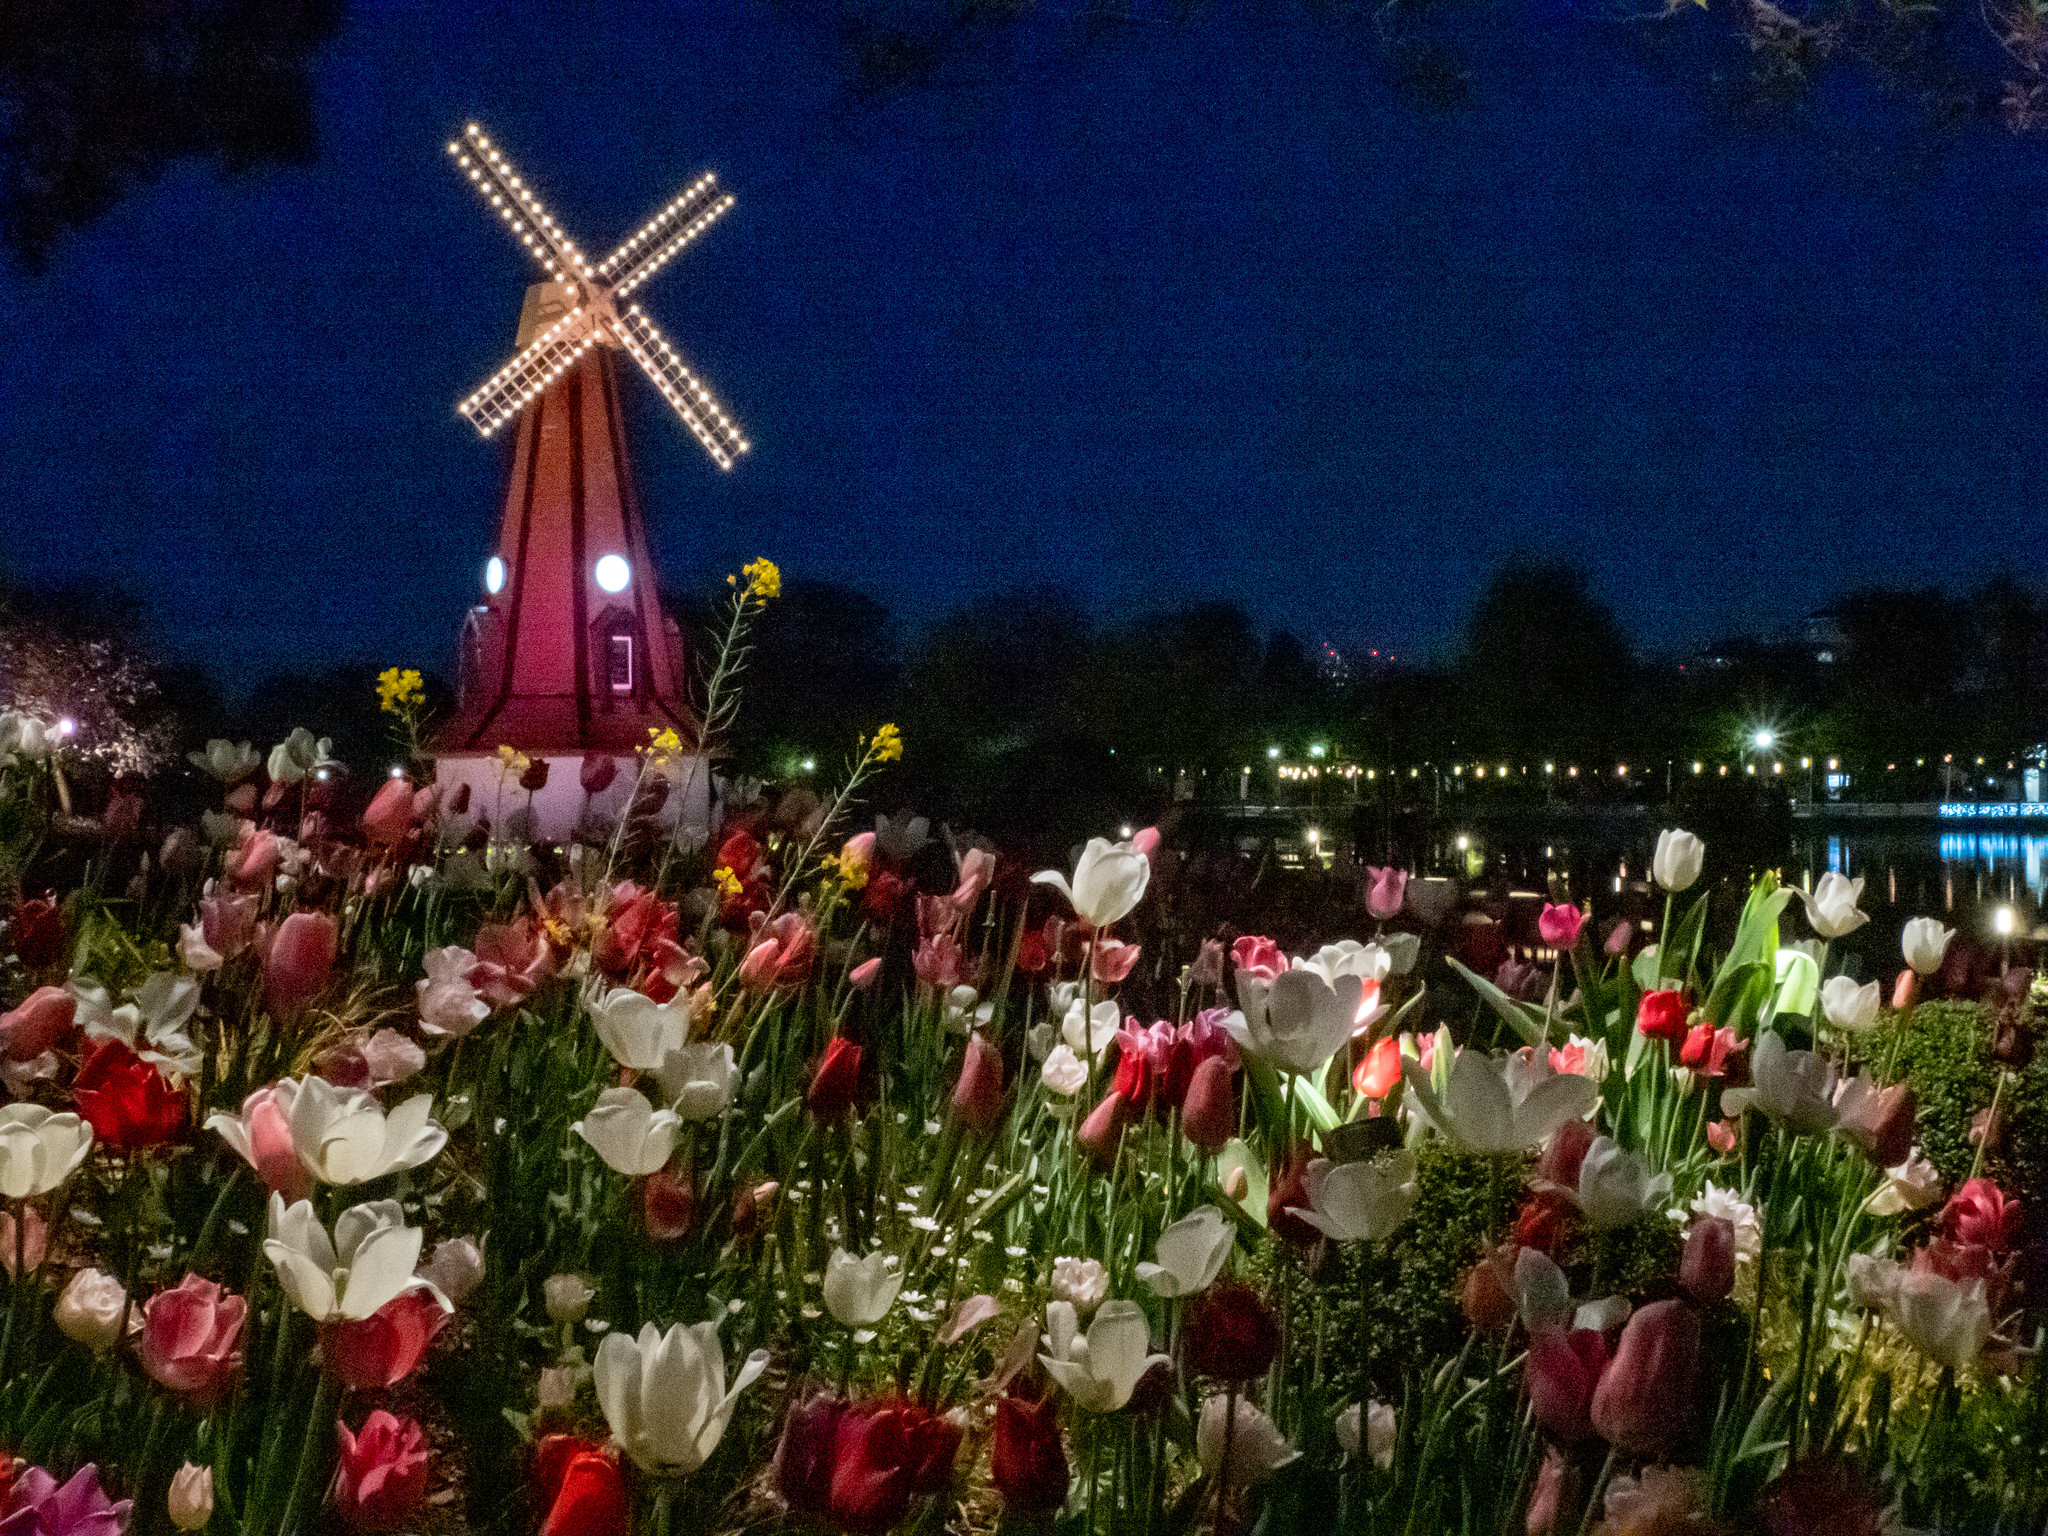 チューリップと風車と八重桜のライトアップ #花と光のムーブメント 都立浮間公園 #チューリップ #桜 #OM1